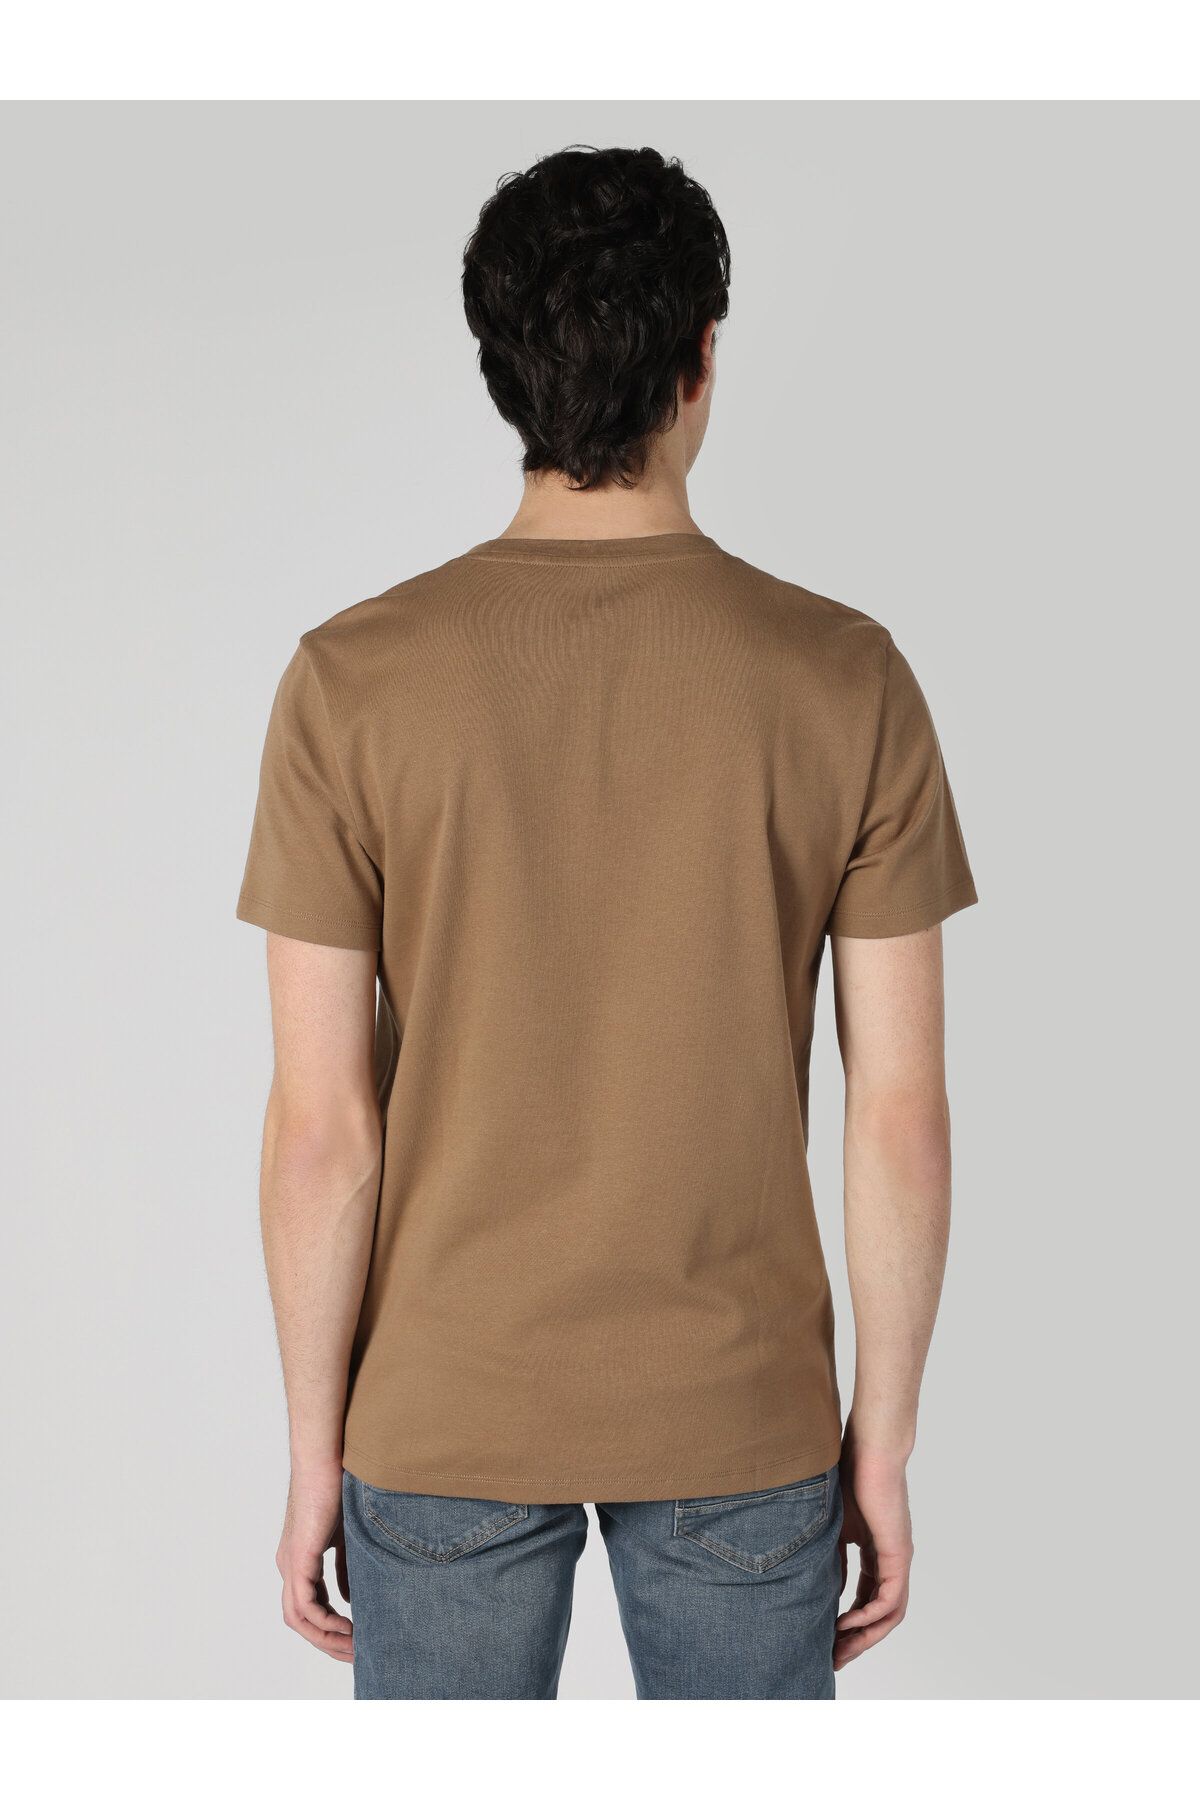 Colin’s تی شرت آستین کوتاه مردانه یقه ای با معمولی فیت